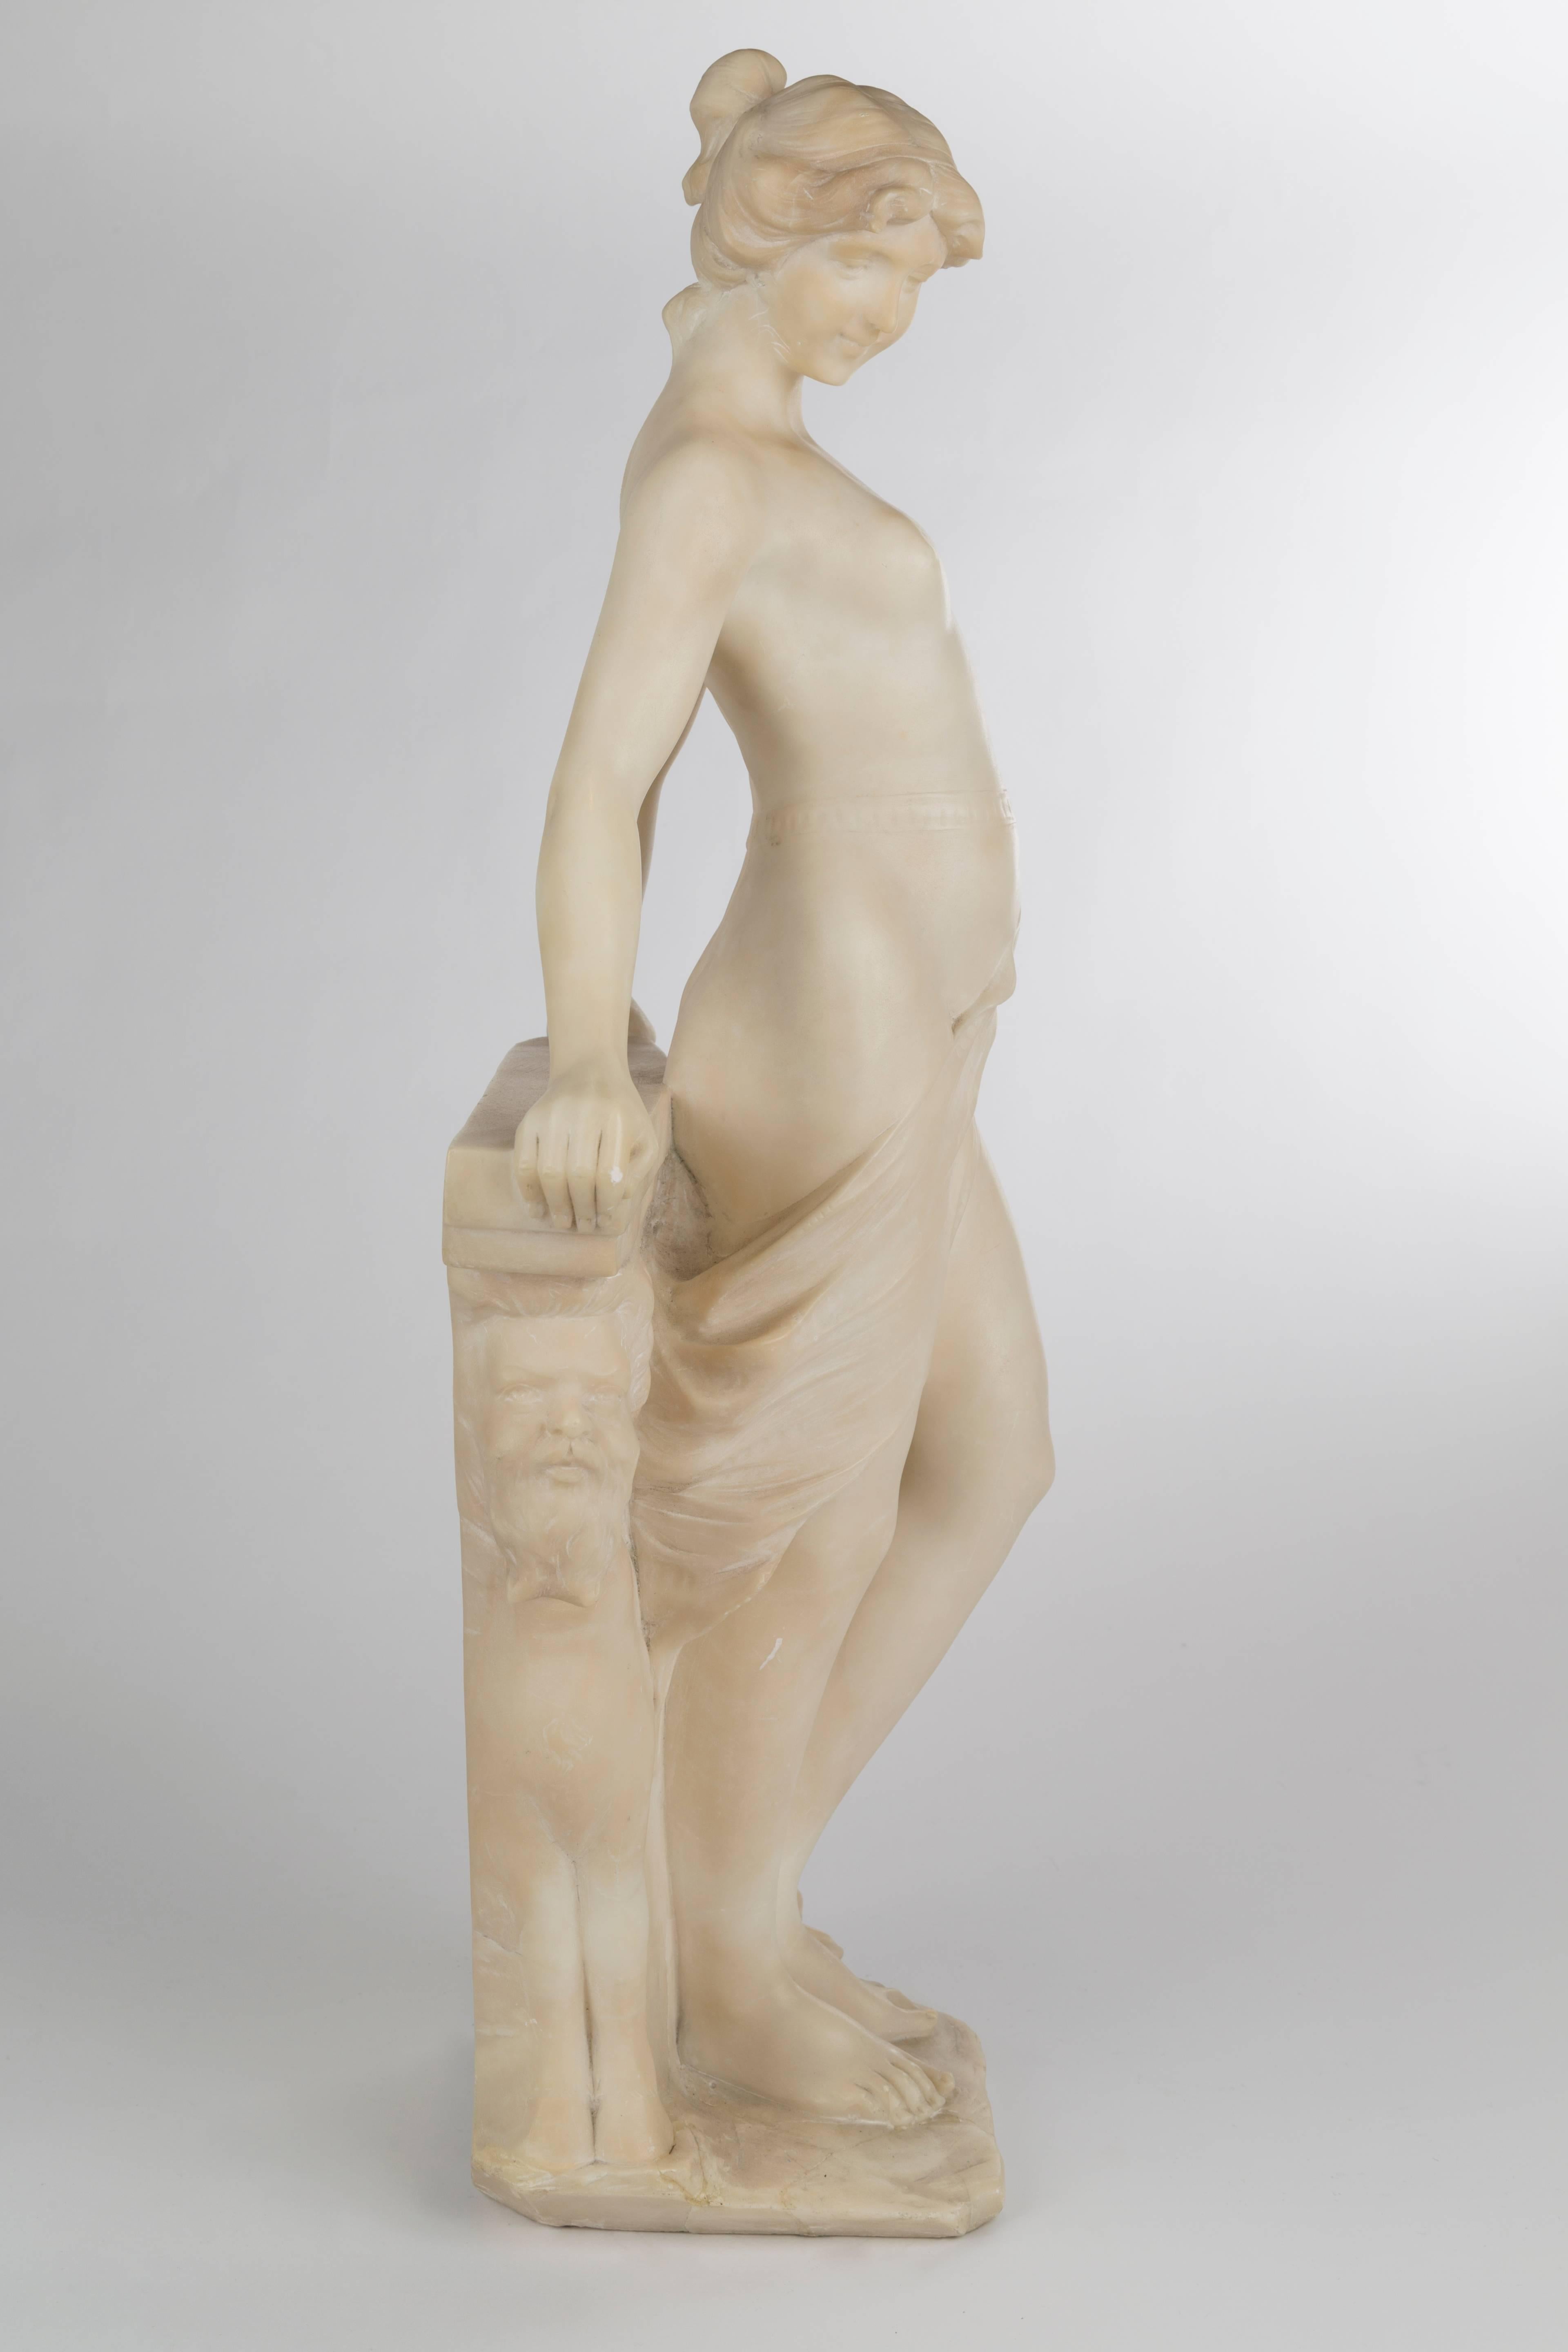 Geschnitzte Frauenfigur, die an einem figuralen Konsolentisch ruht,
19. Jahrhundert.